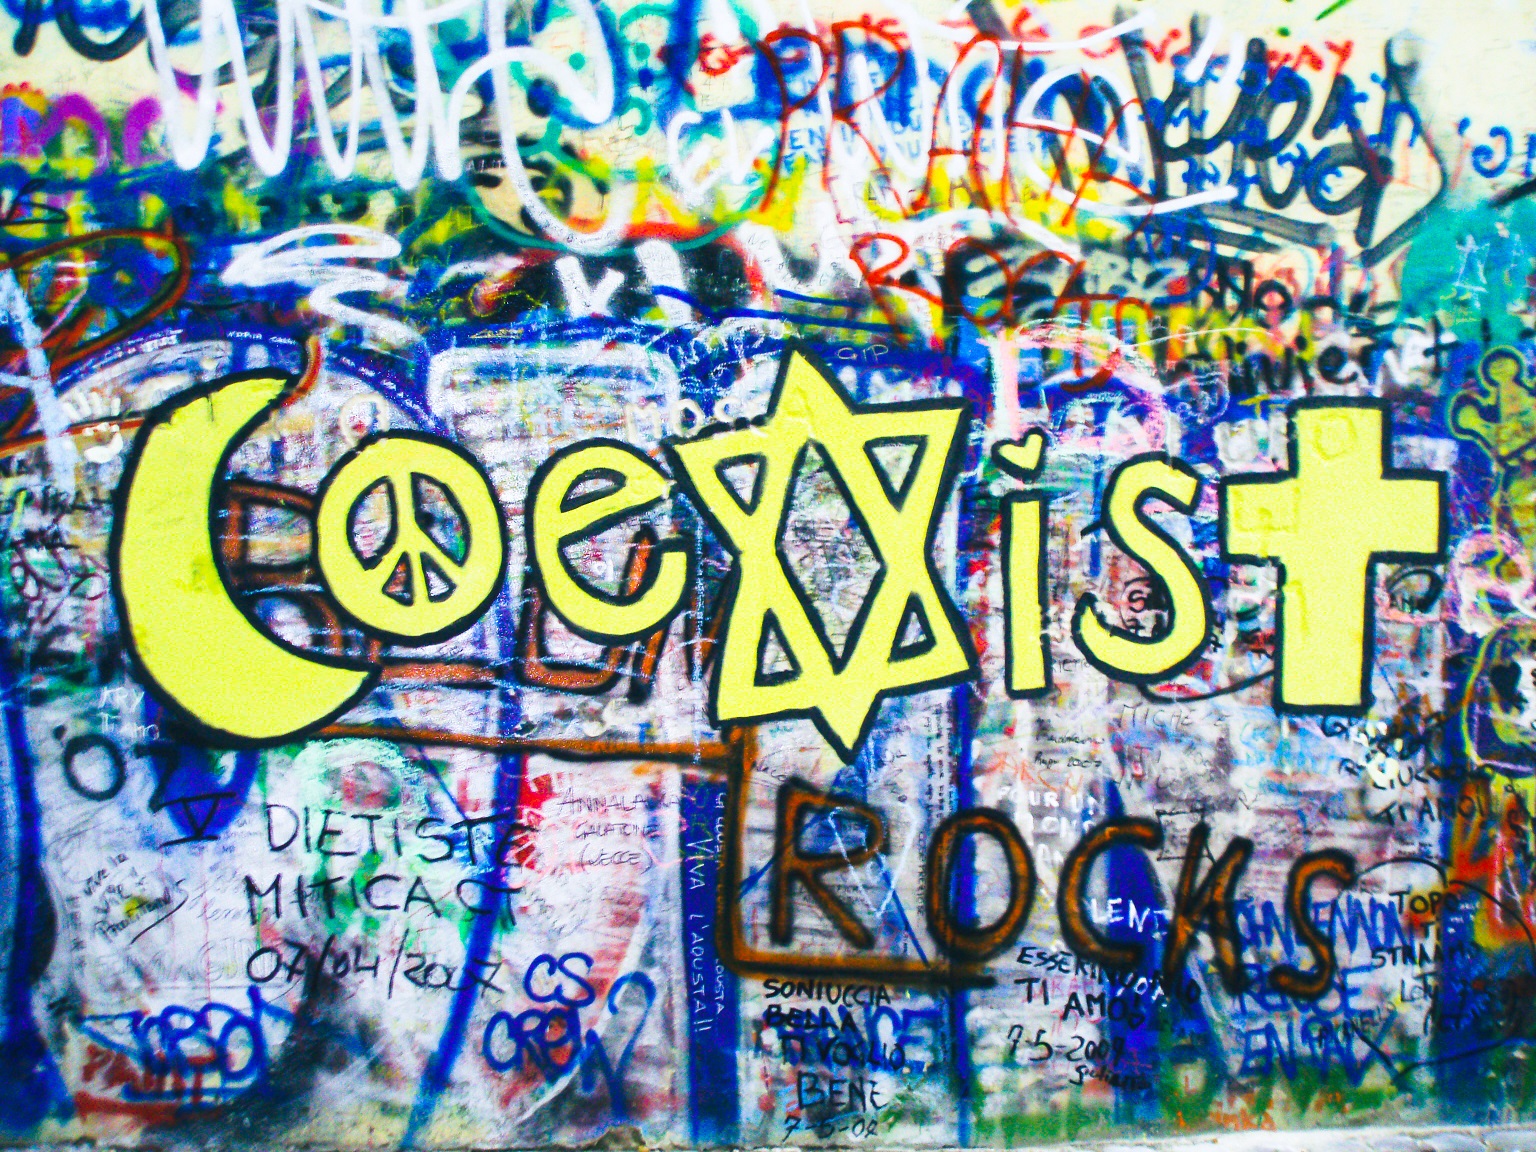 Ściana Johna Lennona w Pradze, na niej napis Coexist. X jest w kształcie Gwiazdy Dawida. Pod spodem dopisek rocks, czyli Coexist rocks.